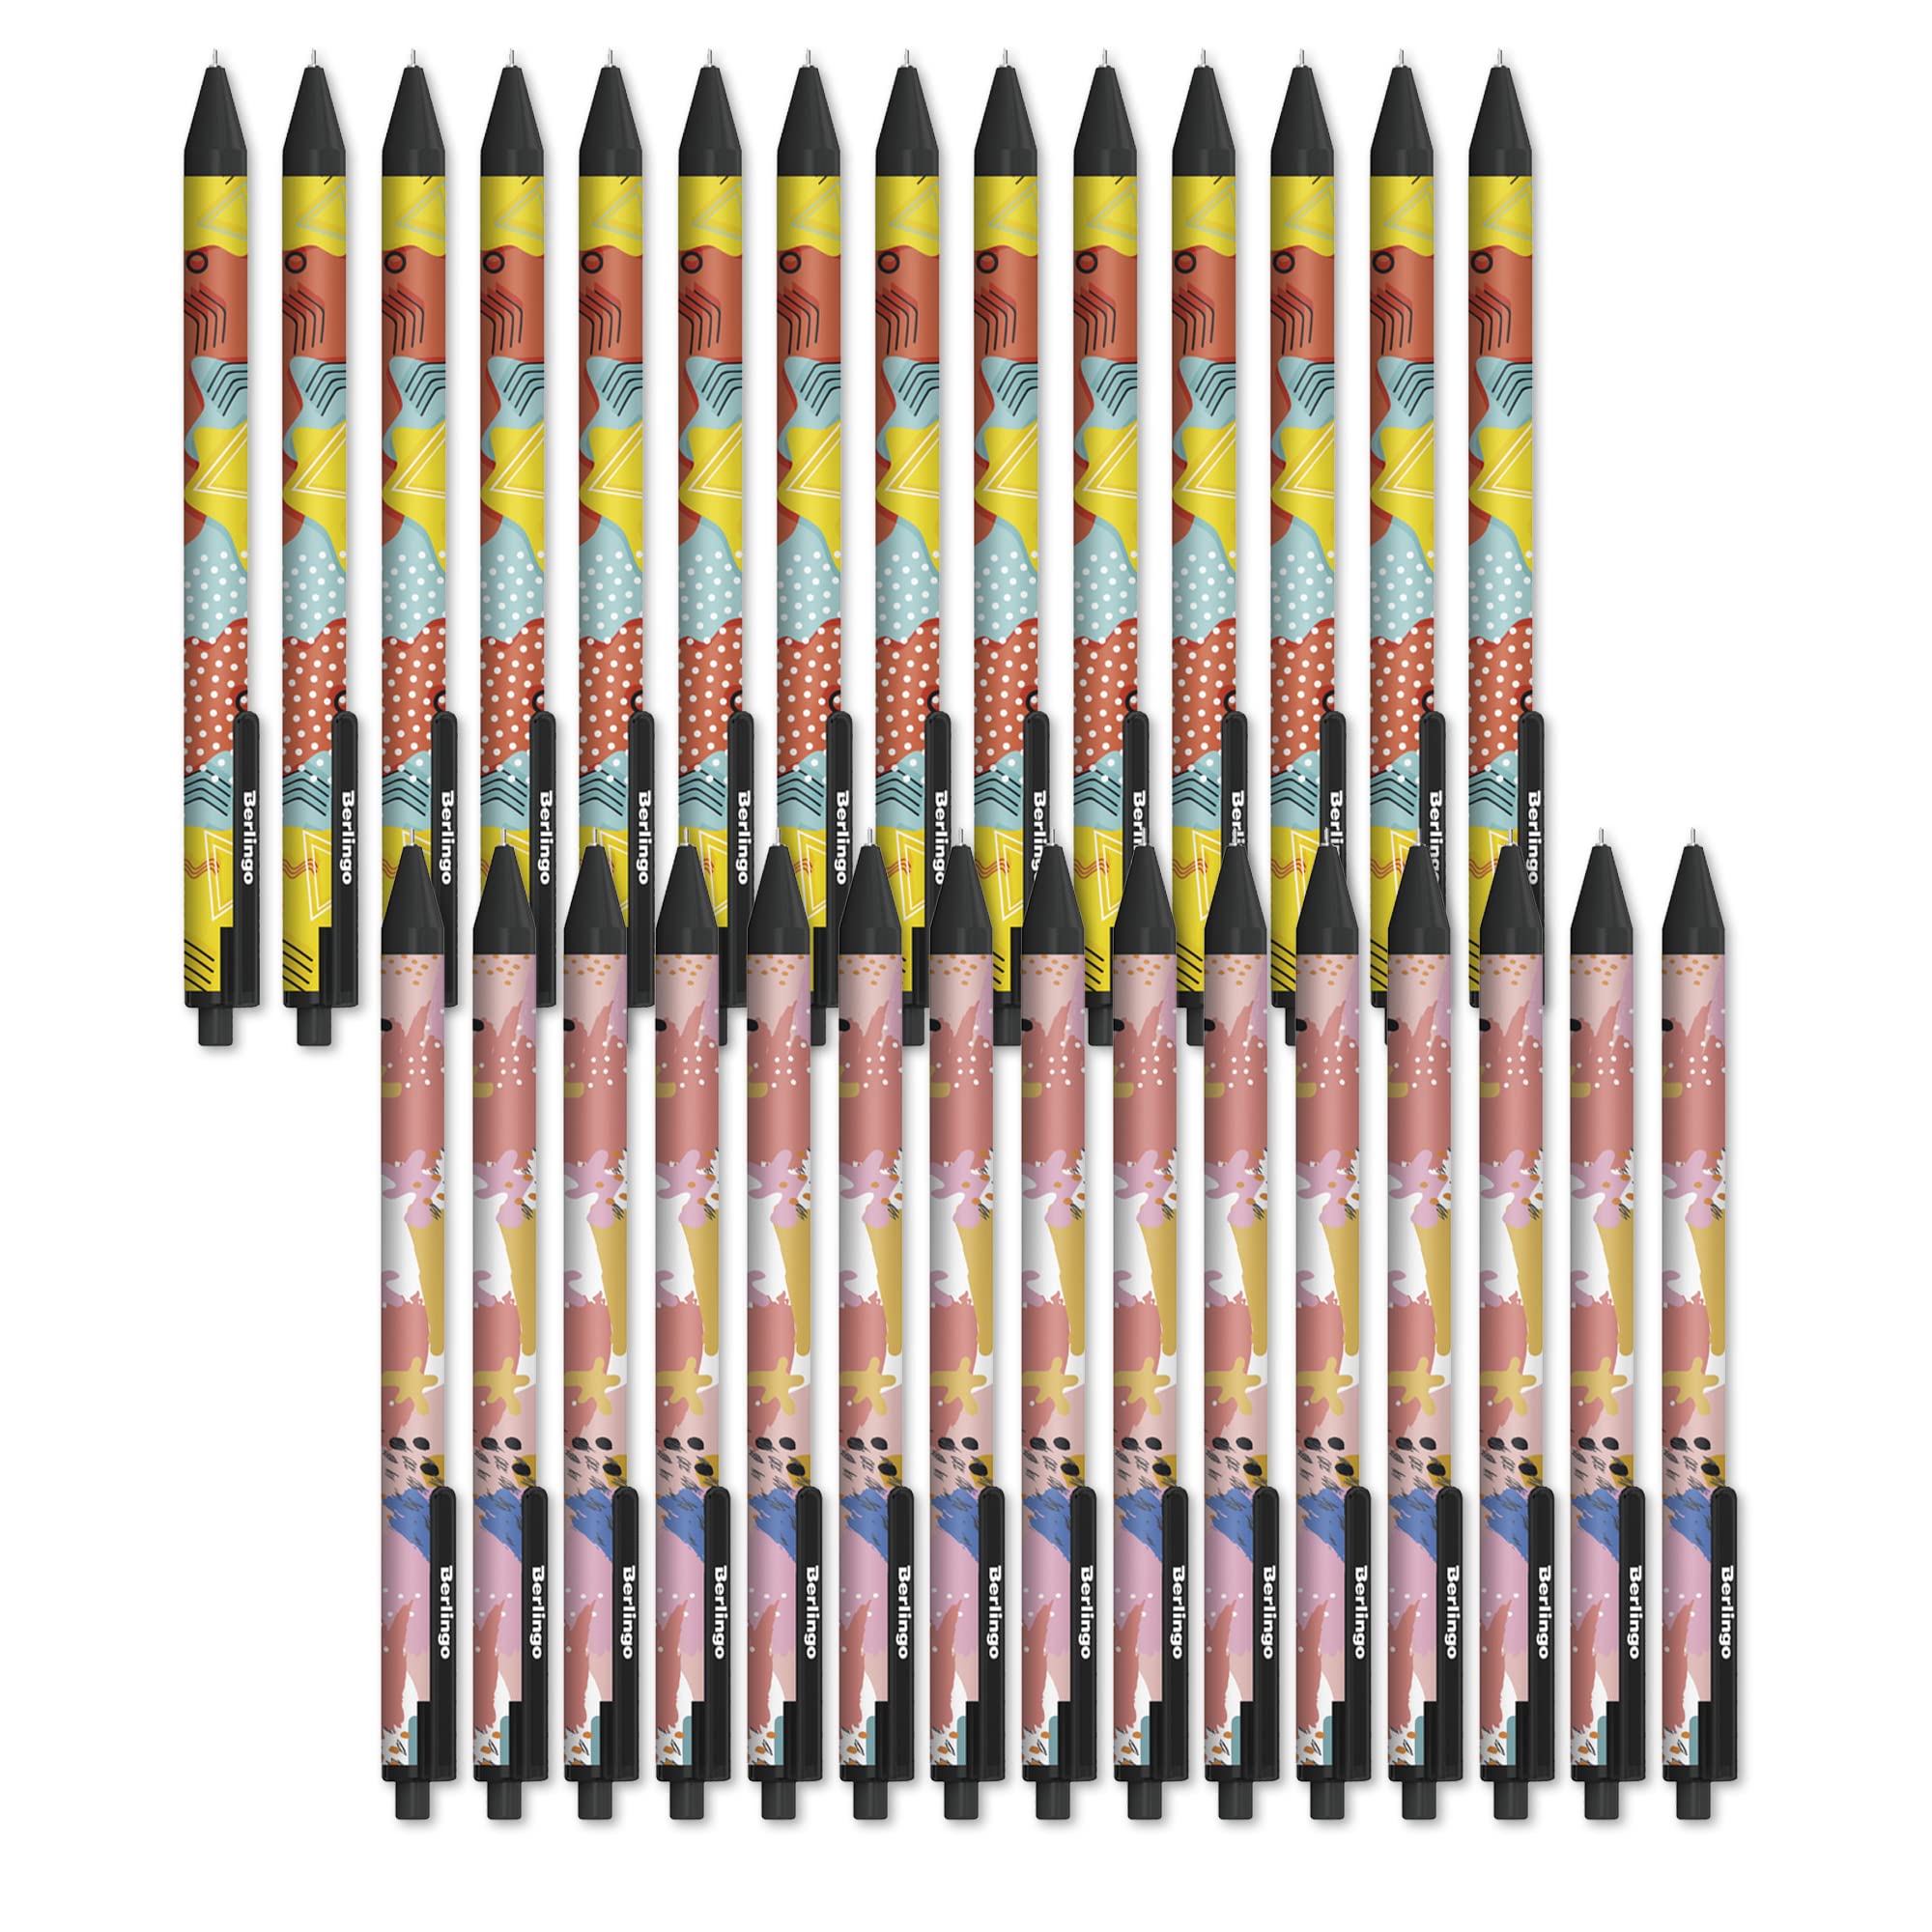 Berlingo Kugelschreiber Set, 30 Stück, Automatisch, Blau, 0,7 mm Strichbreite, für das Büro, das Home Office oder die Schule und Uni (Memphis)